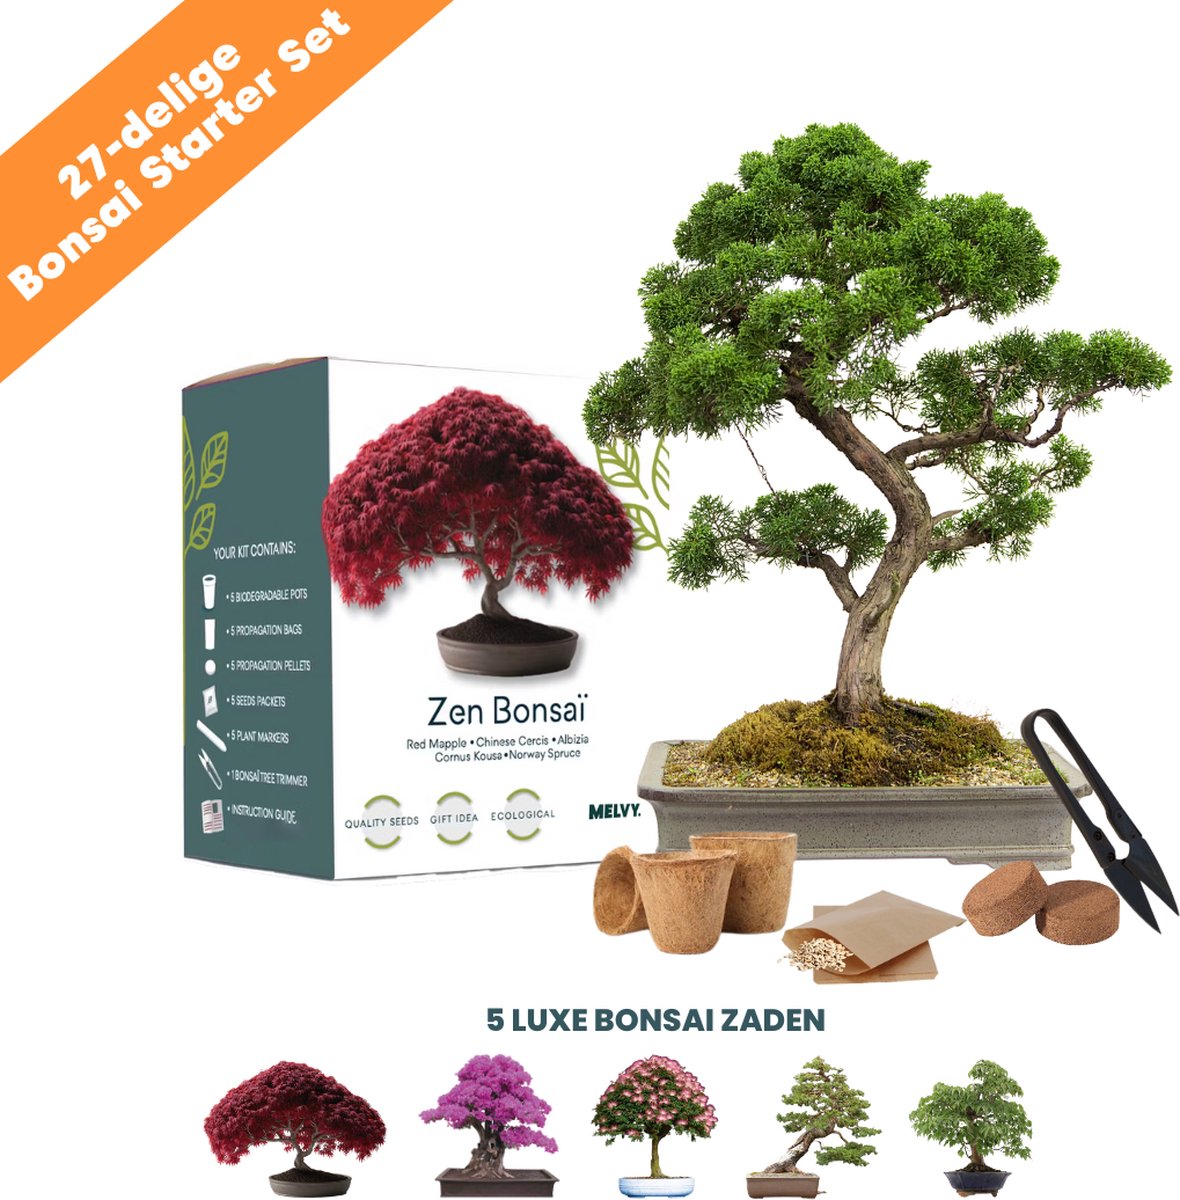 Kit de démarrage Bonsai Tree avec Graines - Outils - Ciseaux - Kit de  culture - Pot 